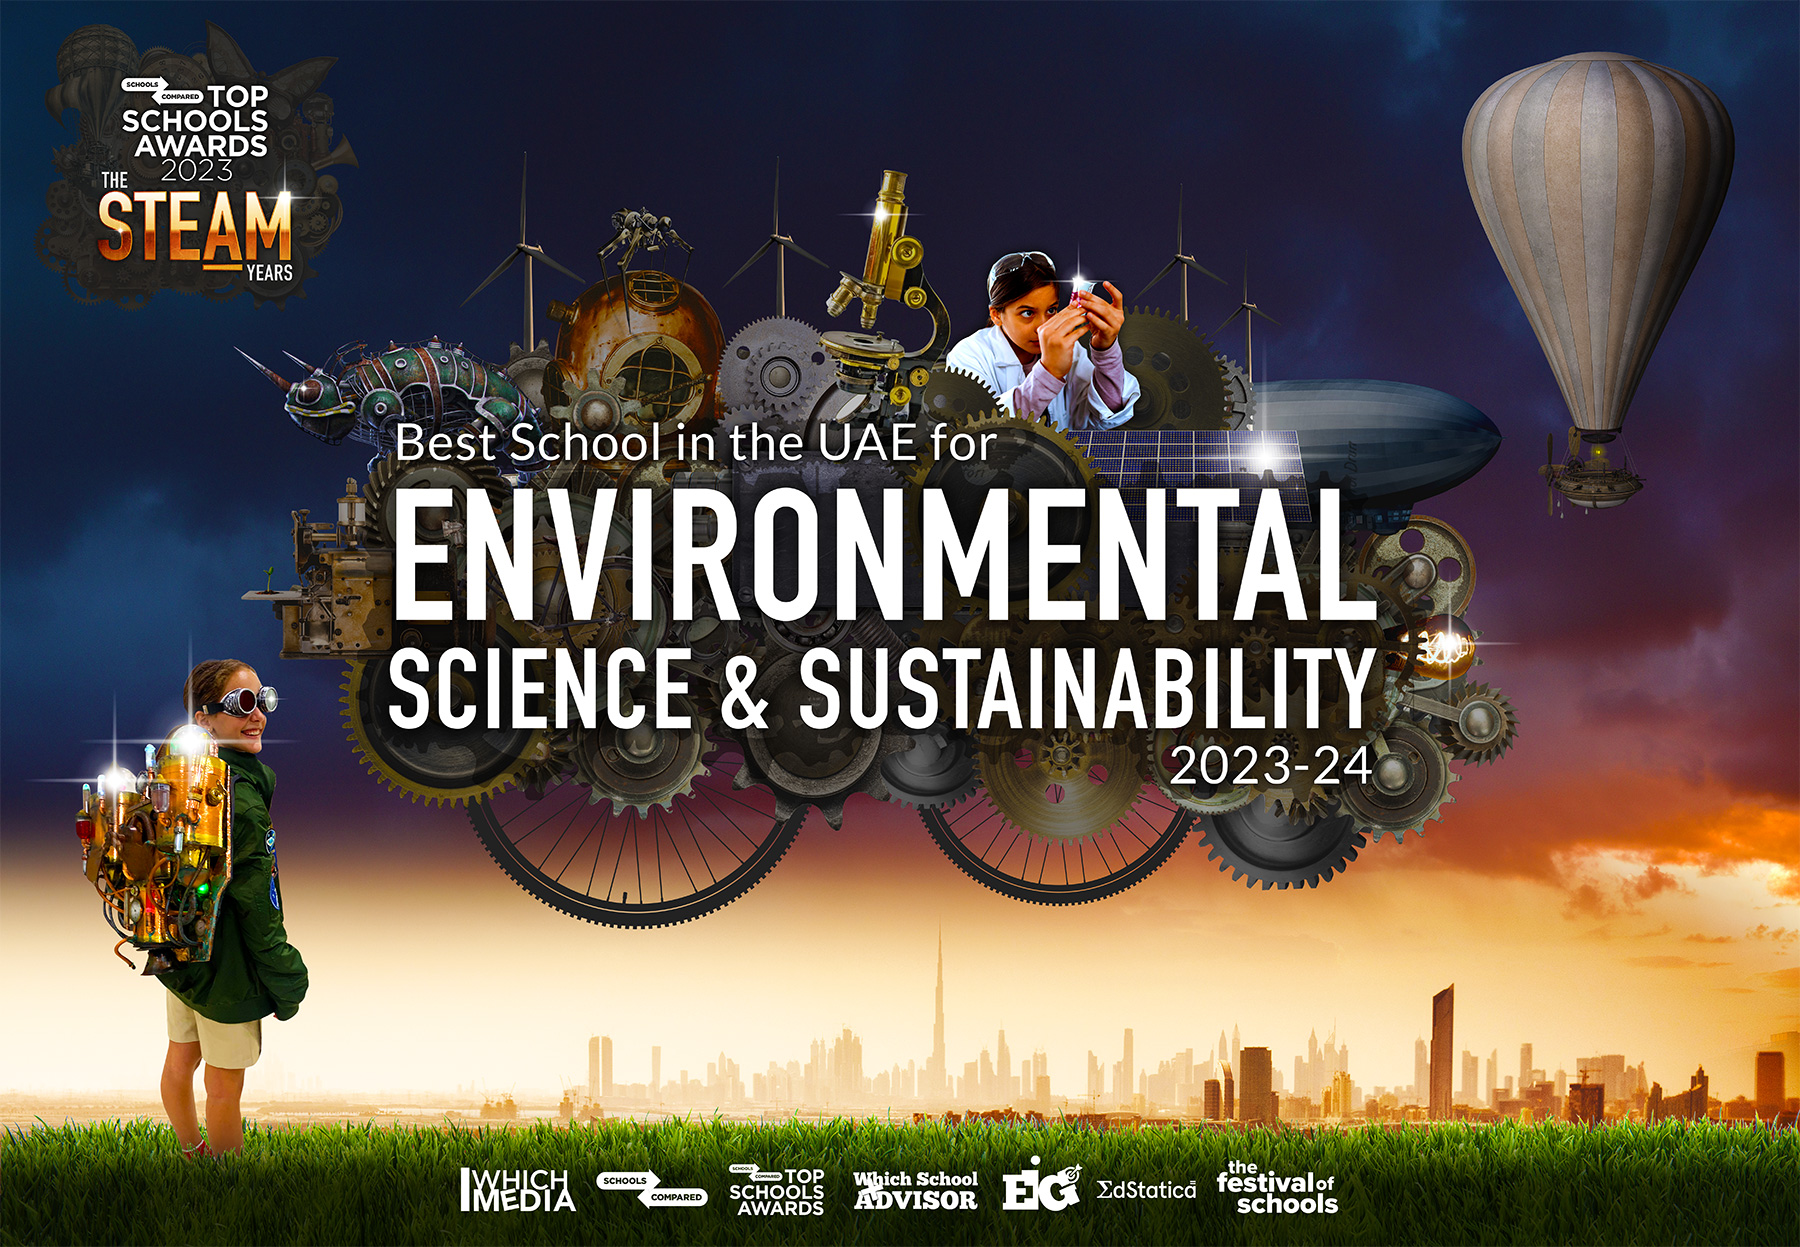 Top Schools Awards 2023 Award für die beste Schule für Umweltwissenschaften und Nachhaltigkeit in den VAE, einschließlich Schulen in Dubai und Abu Dhabi